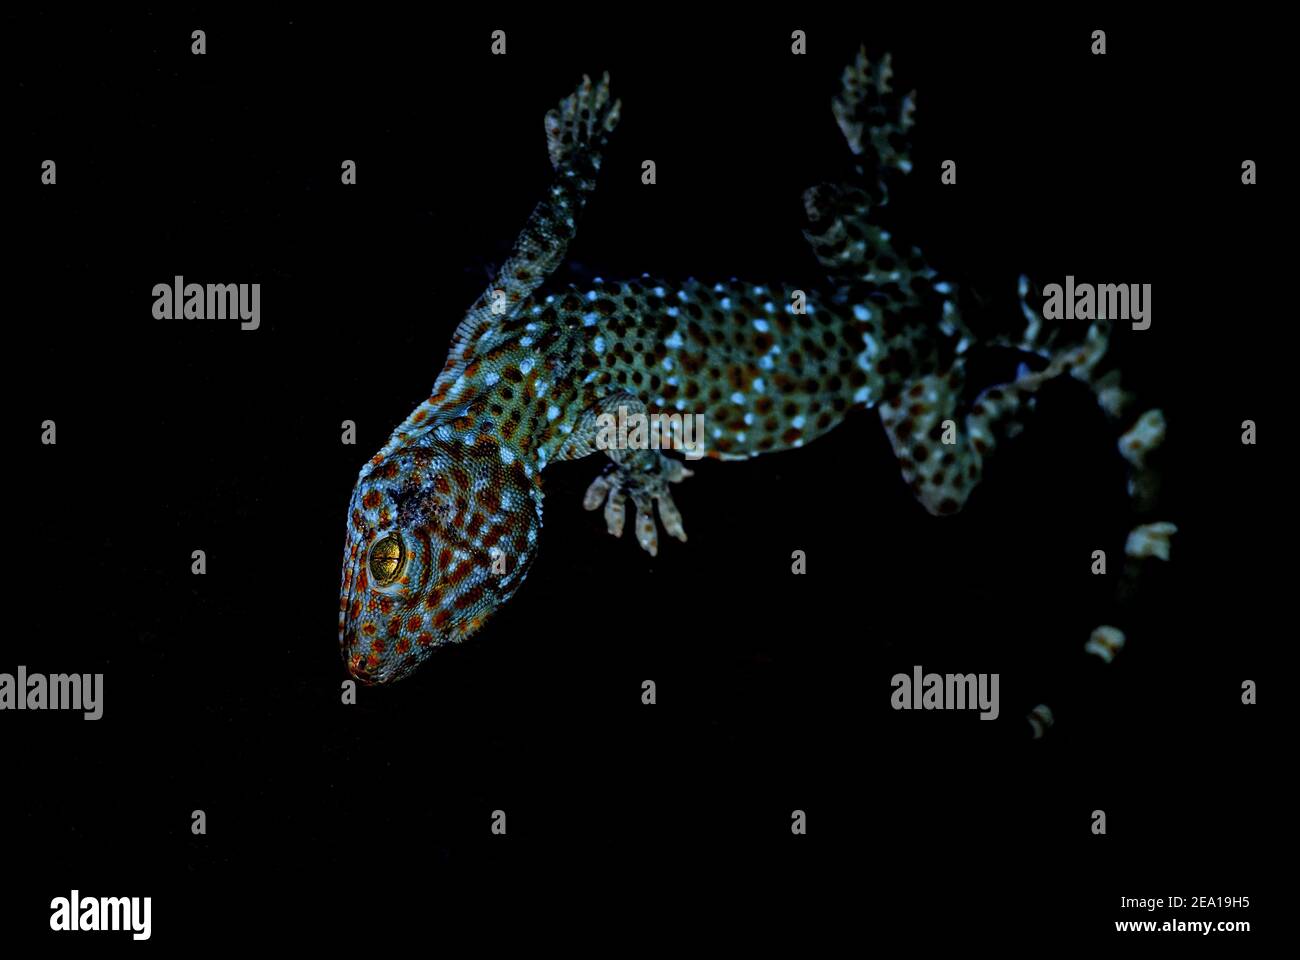 Tokay Gecko - Gekko gecko, magnifique grand lézard de gradens et maisons asiatiques, Thaïlande. Banque D'Images